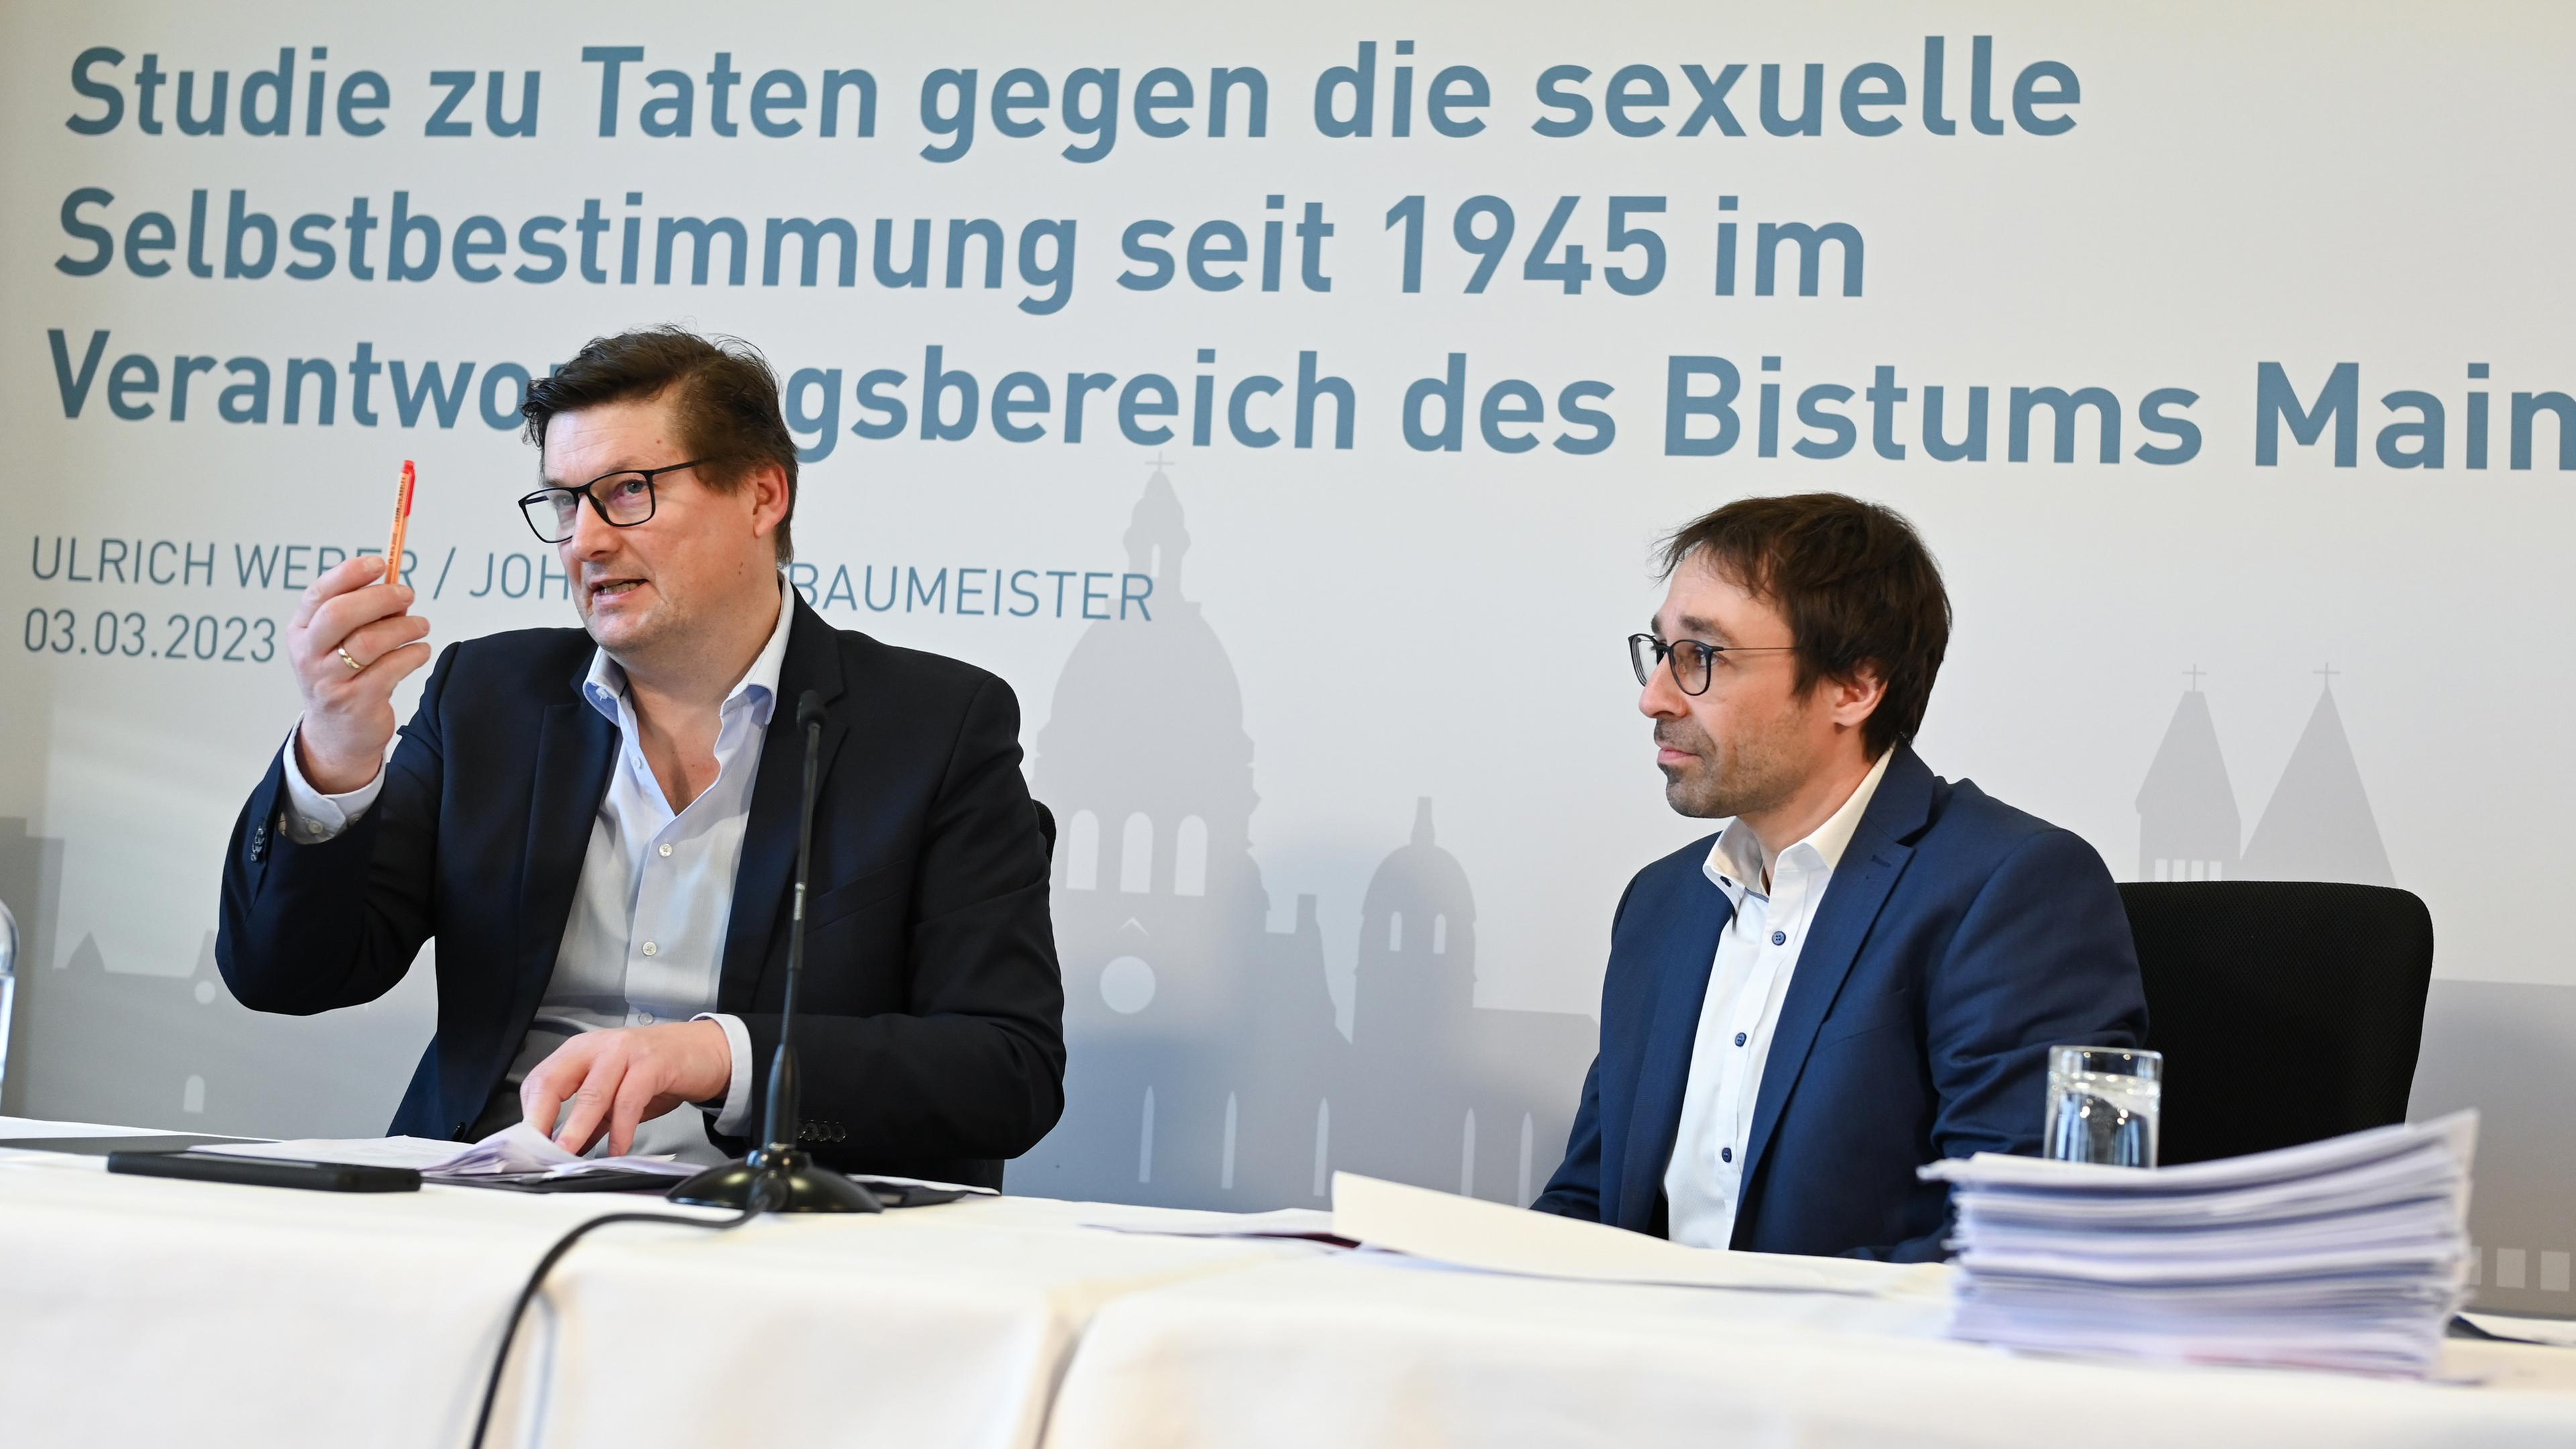 Studie zu sexuellem Missbrauch im Bistum Mainz, Rechtsanwälte Ulrich Weber (l) und Johannes Baumeister